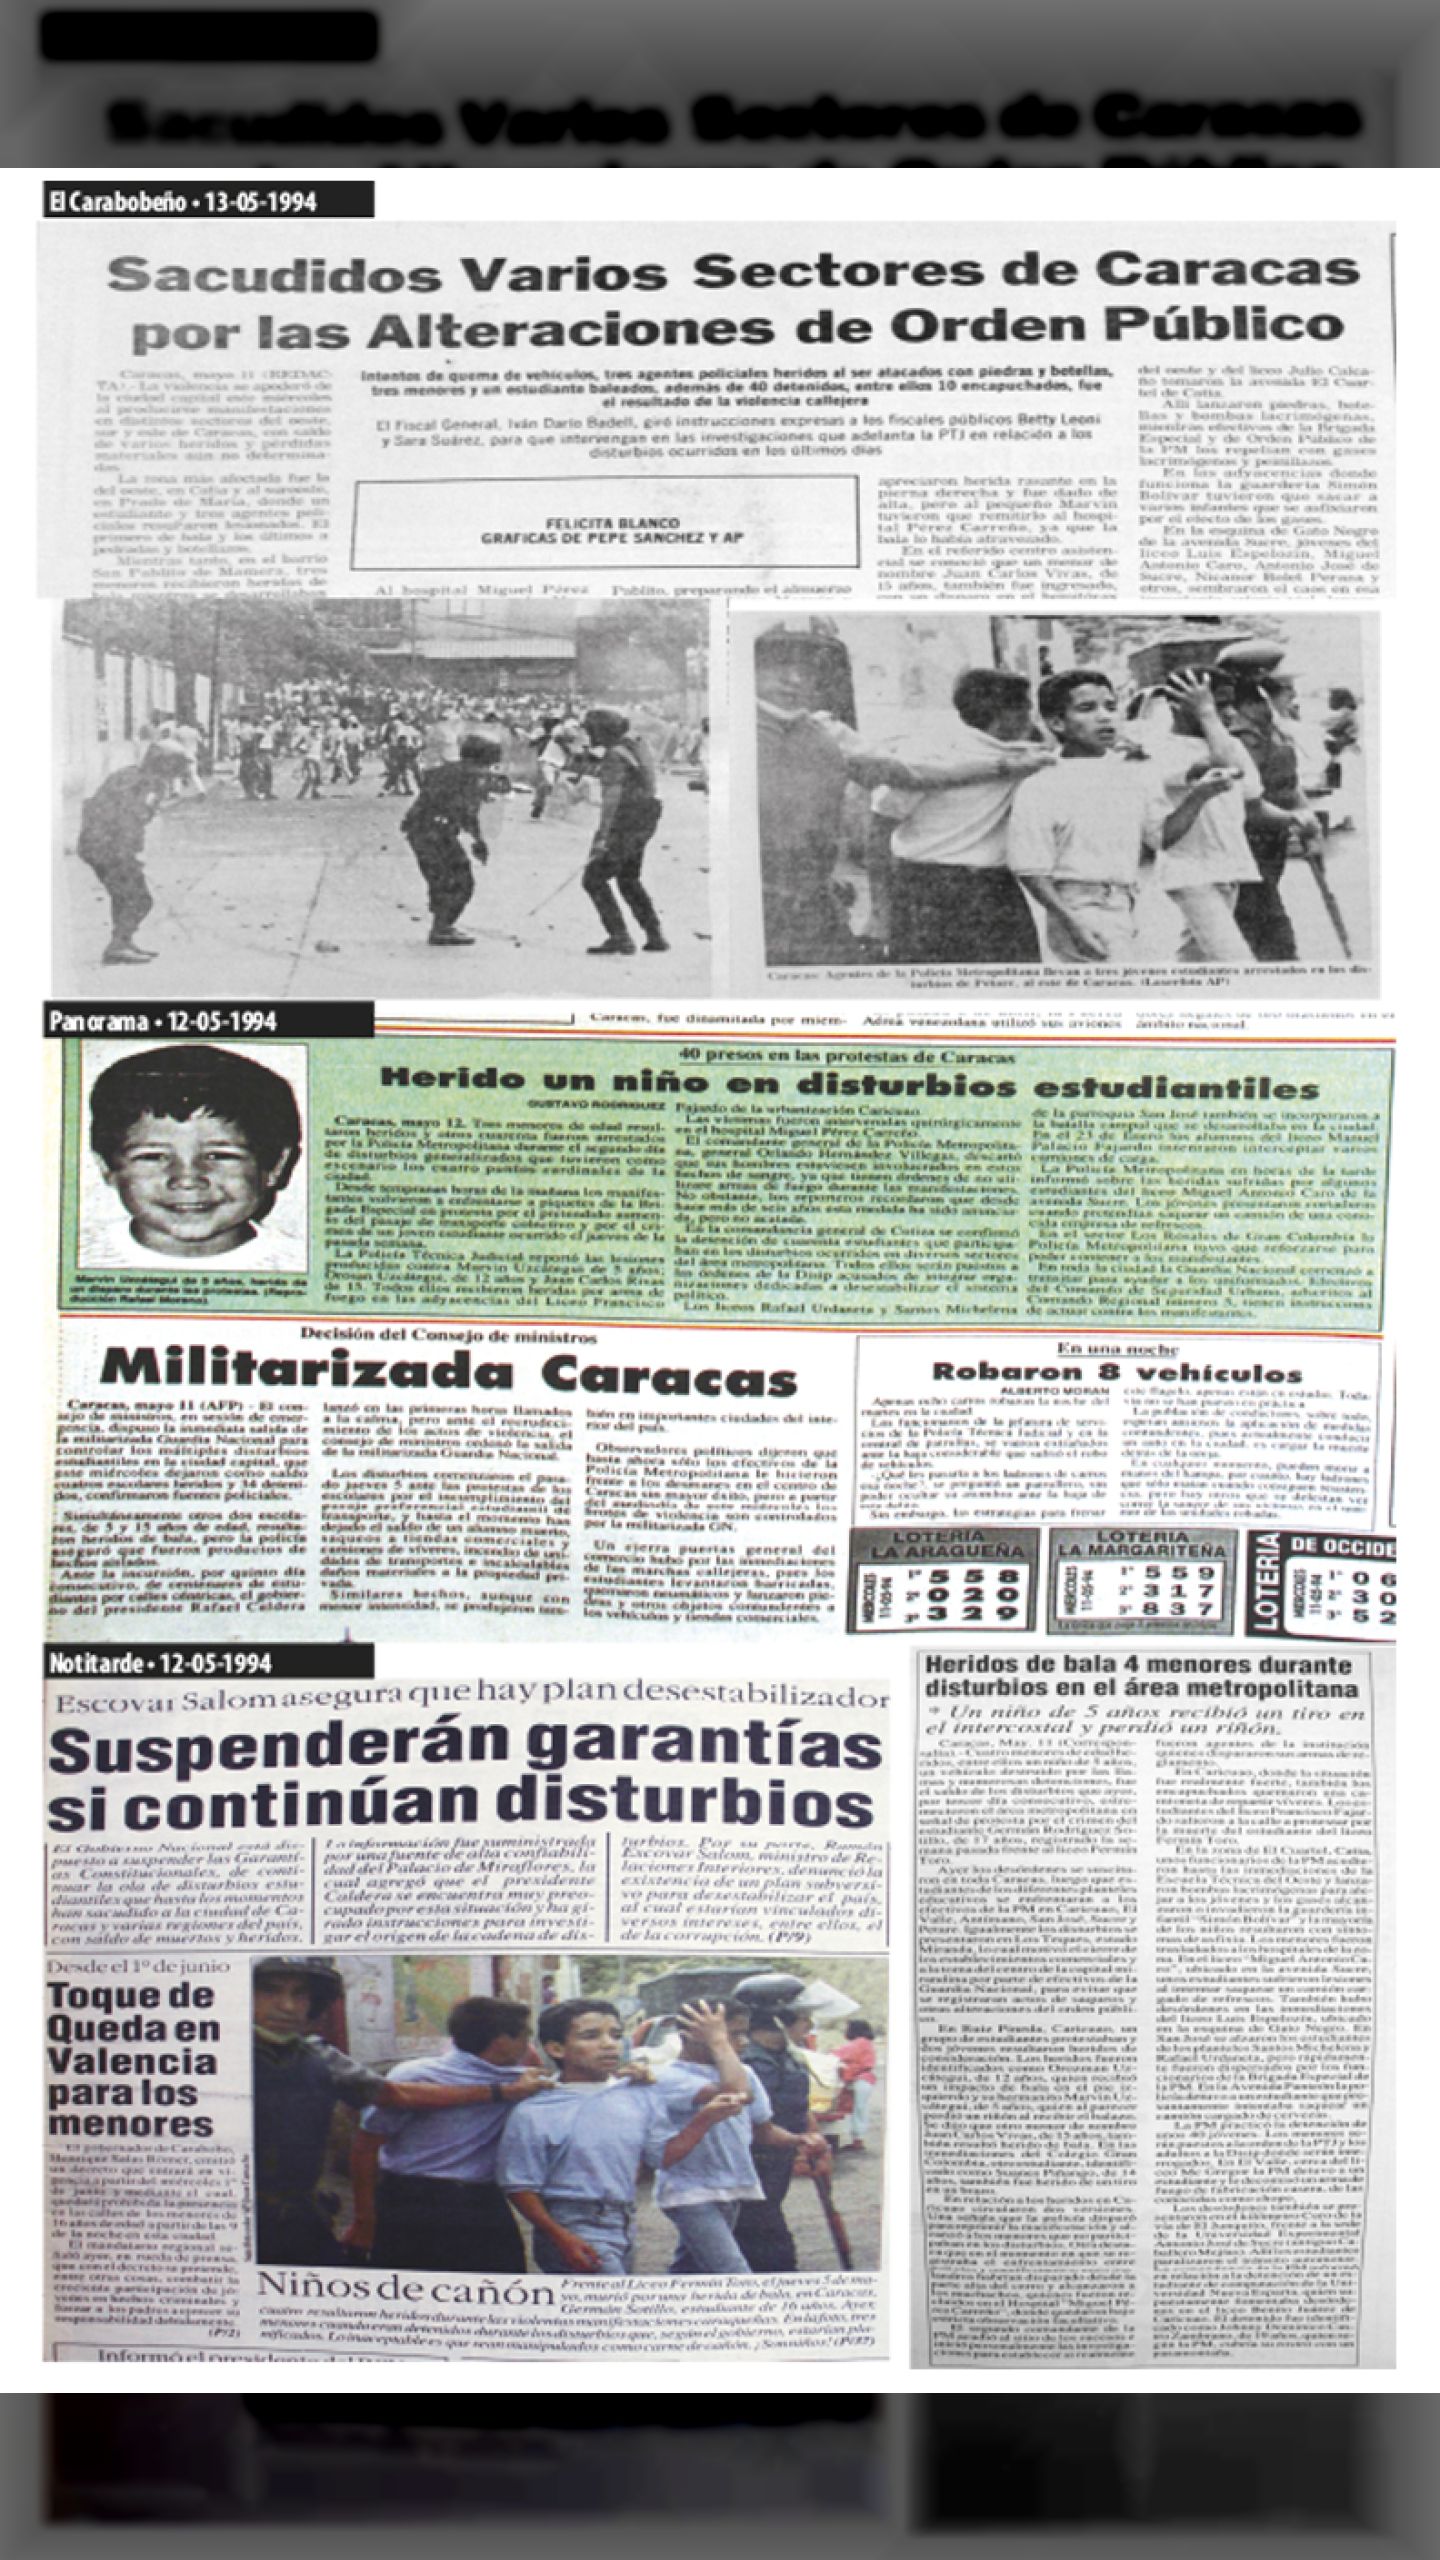 ¡NIÑOS DE CAÑON! (Noti-tarde y El Carabobeño, 12 de mayo 1994)